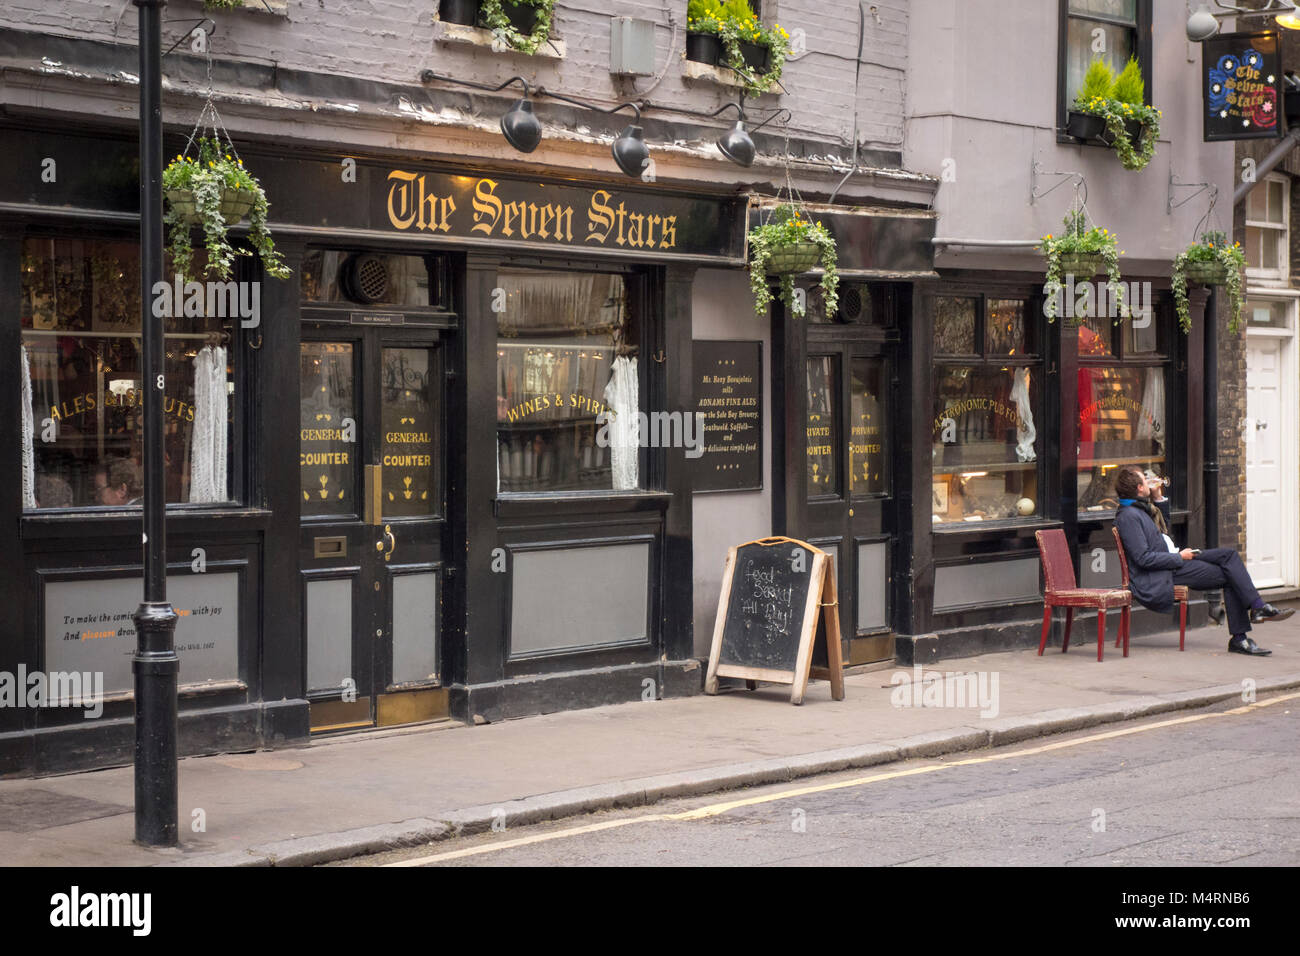 L'homme en dehors de la potable sept étoiles pub, Carey Street, Holborn, London, UK Banque D'Images